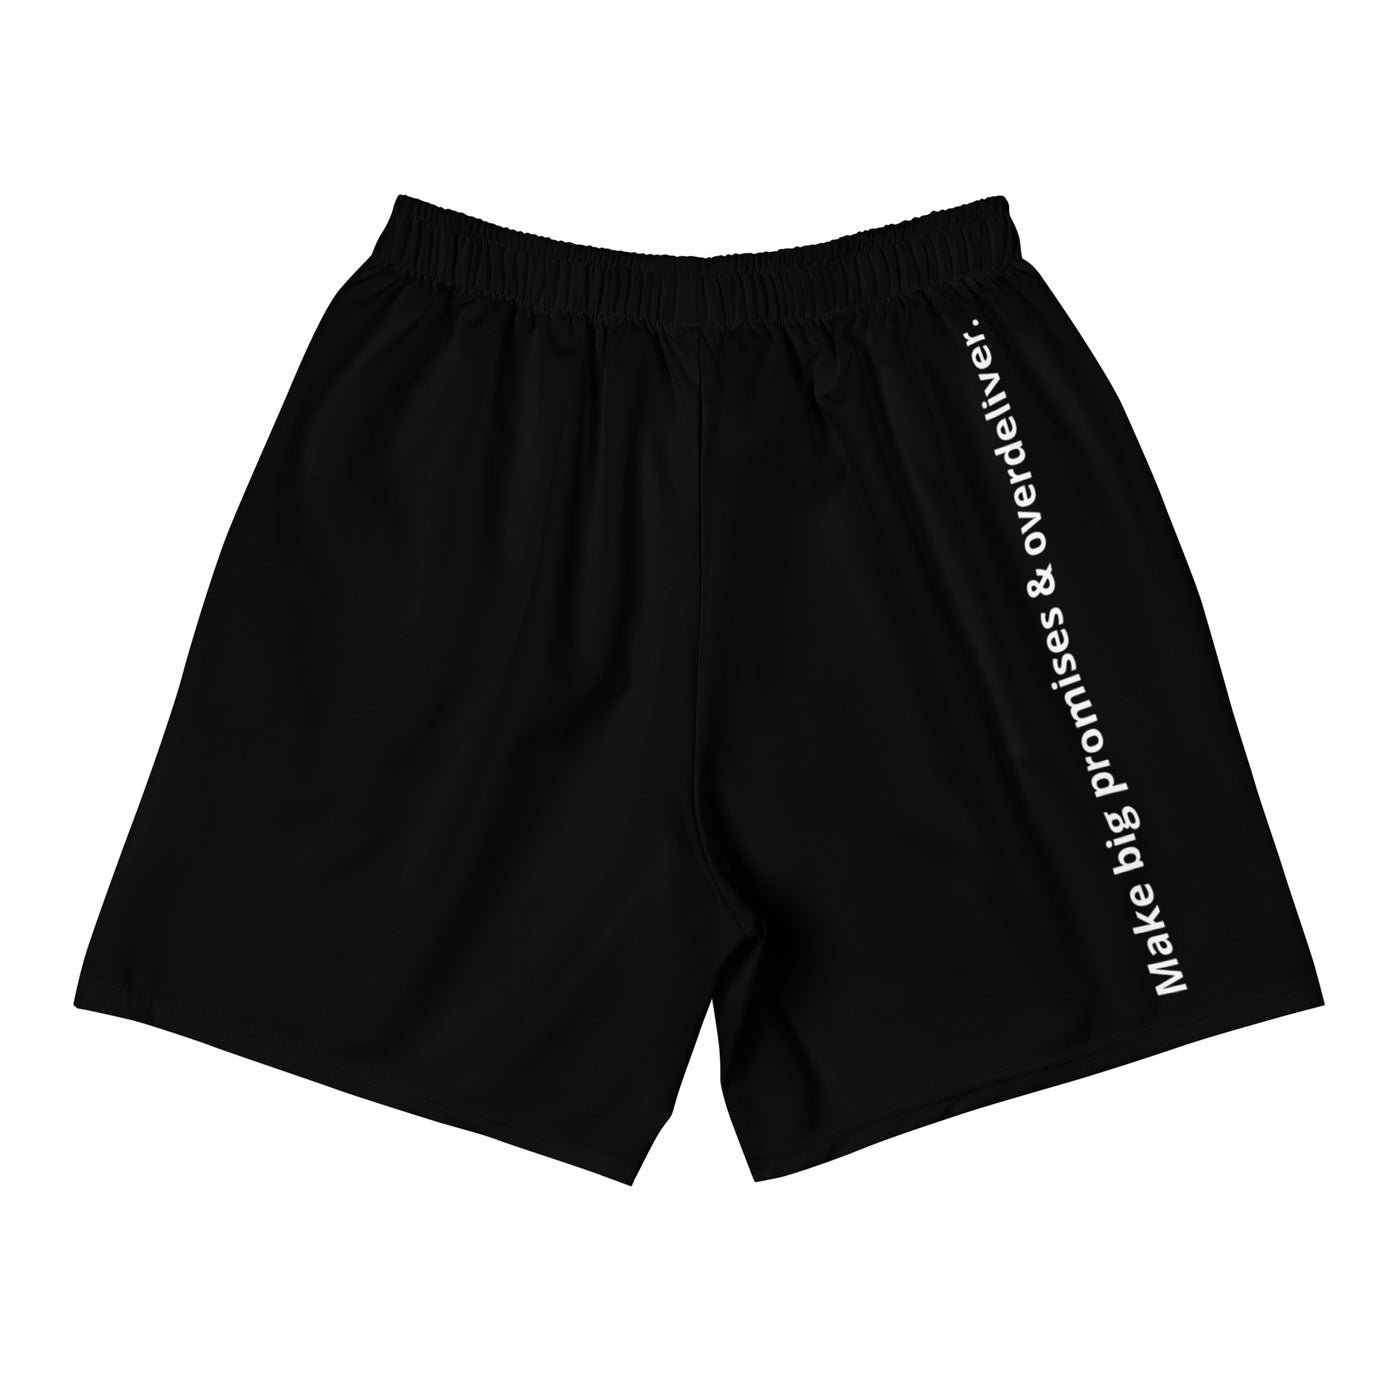 GOAT Worldwide Classic Training Shorts (Black)